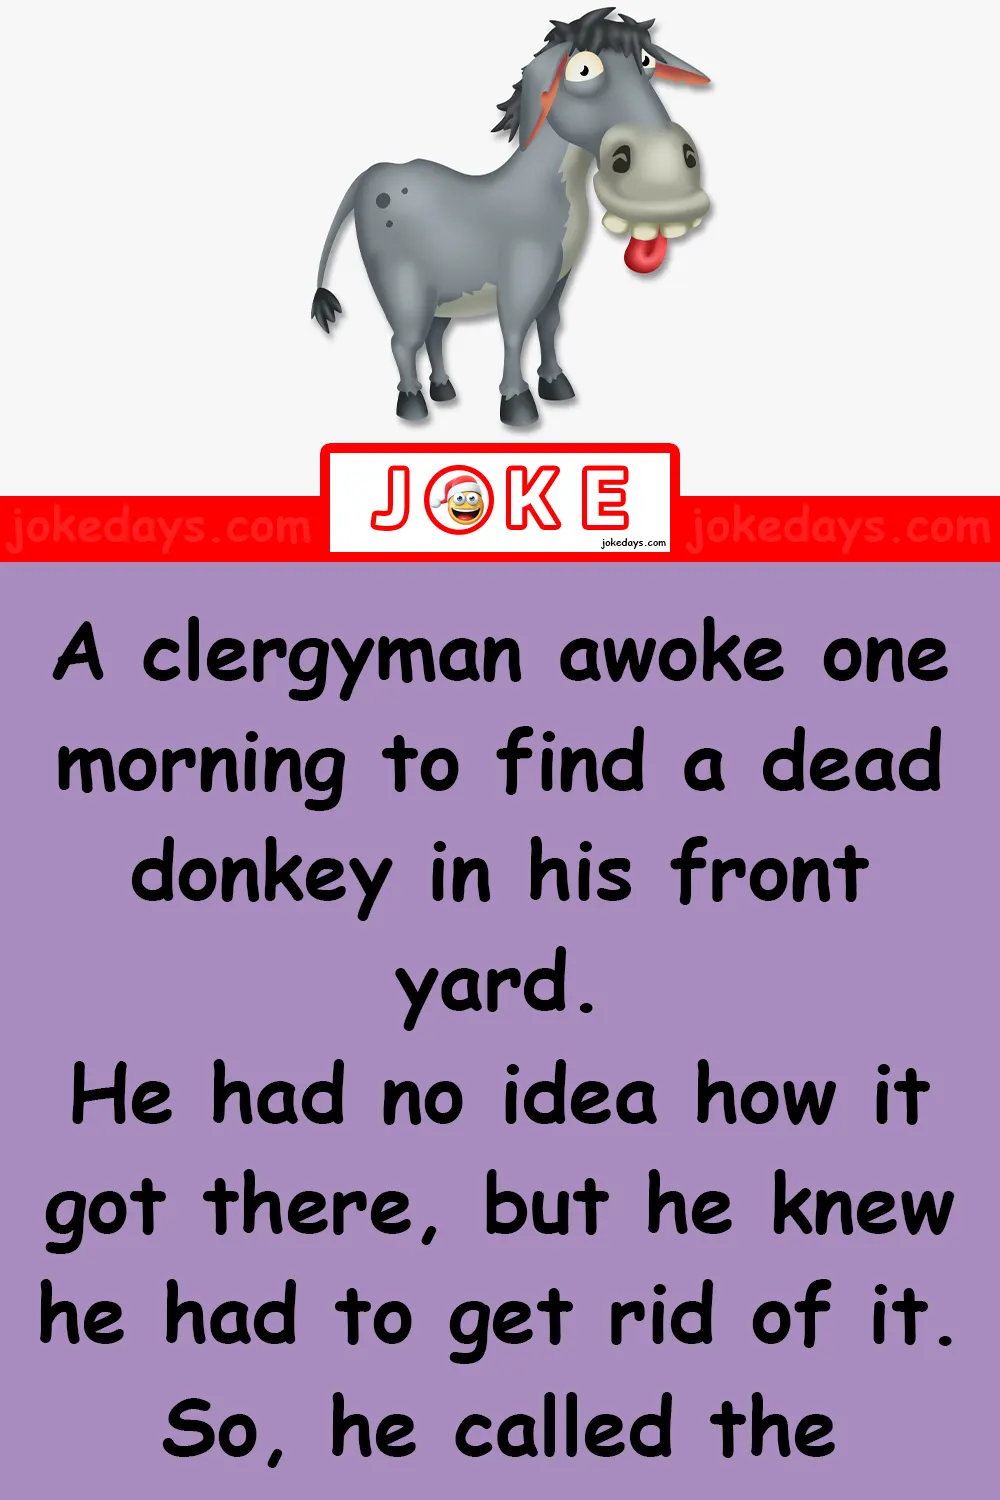 Dead Donkey